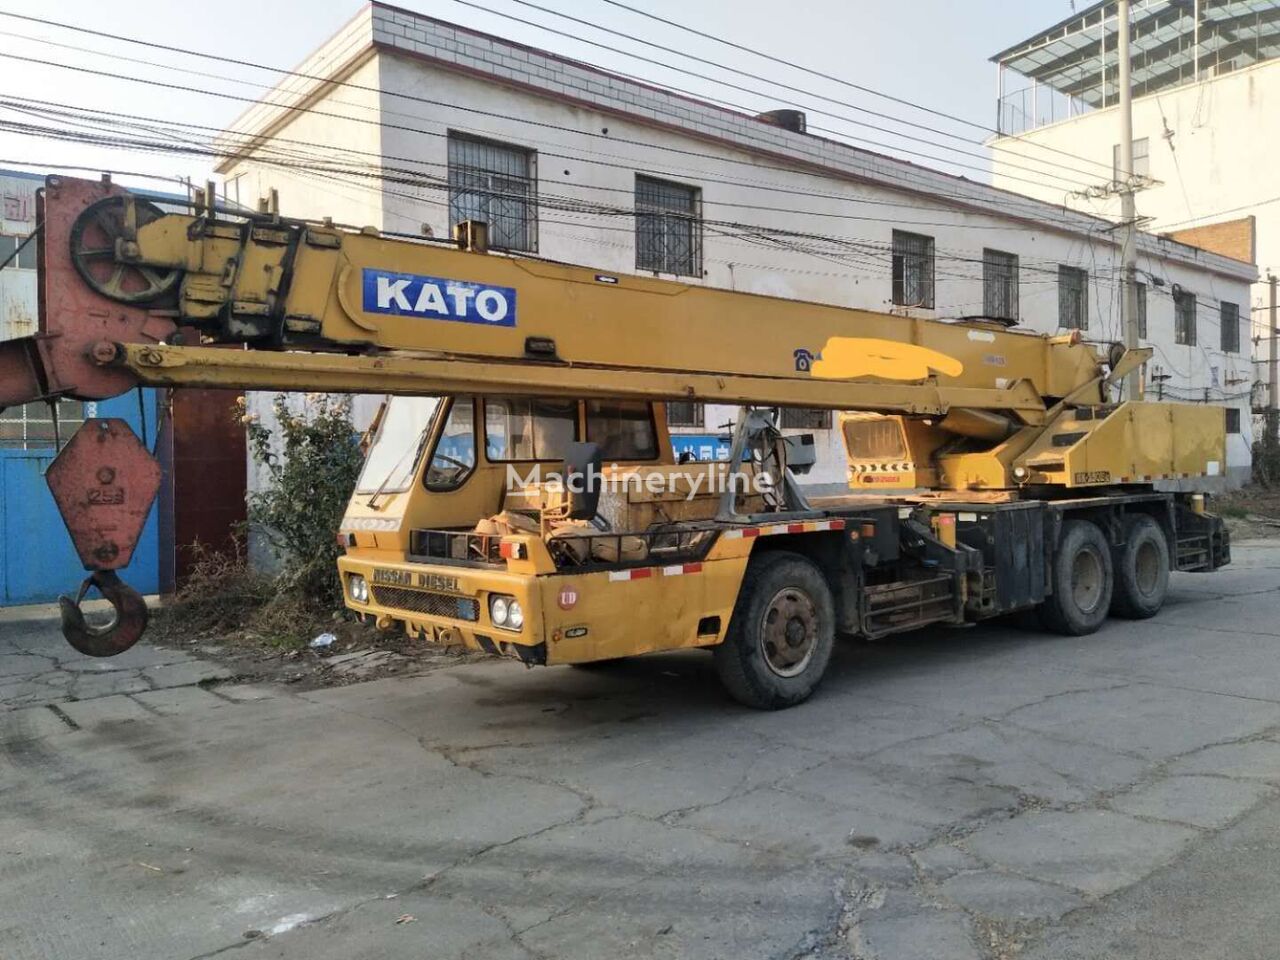 Kato mobile crane